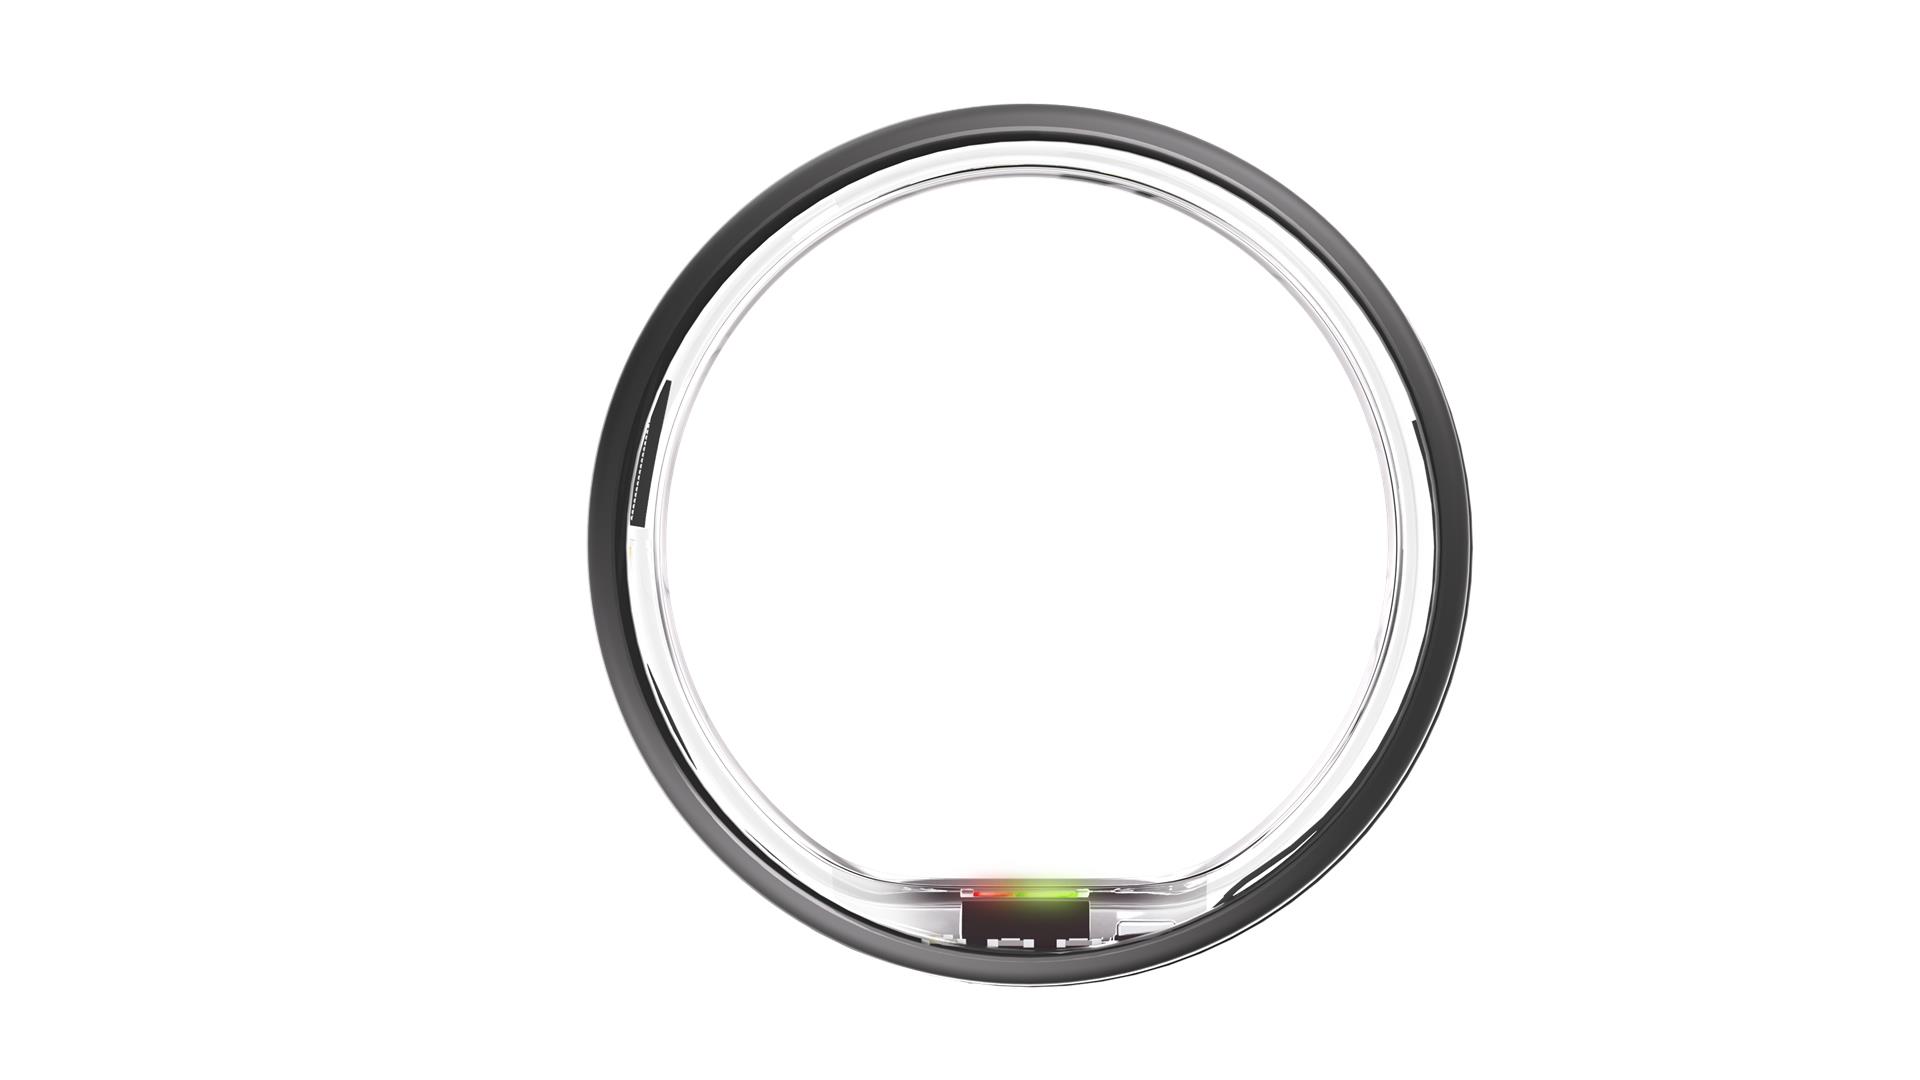 Ultrahuman Ring Air умное кольцо, матовый серый, 11